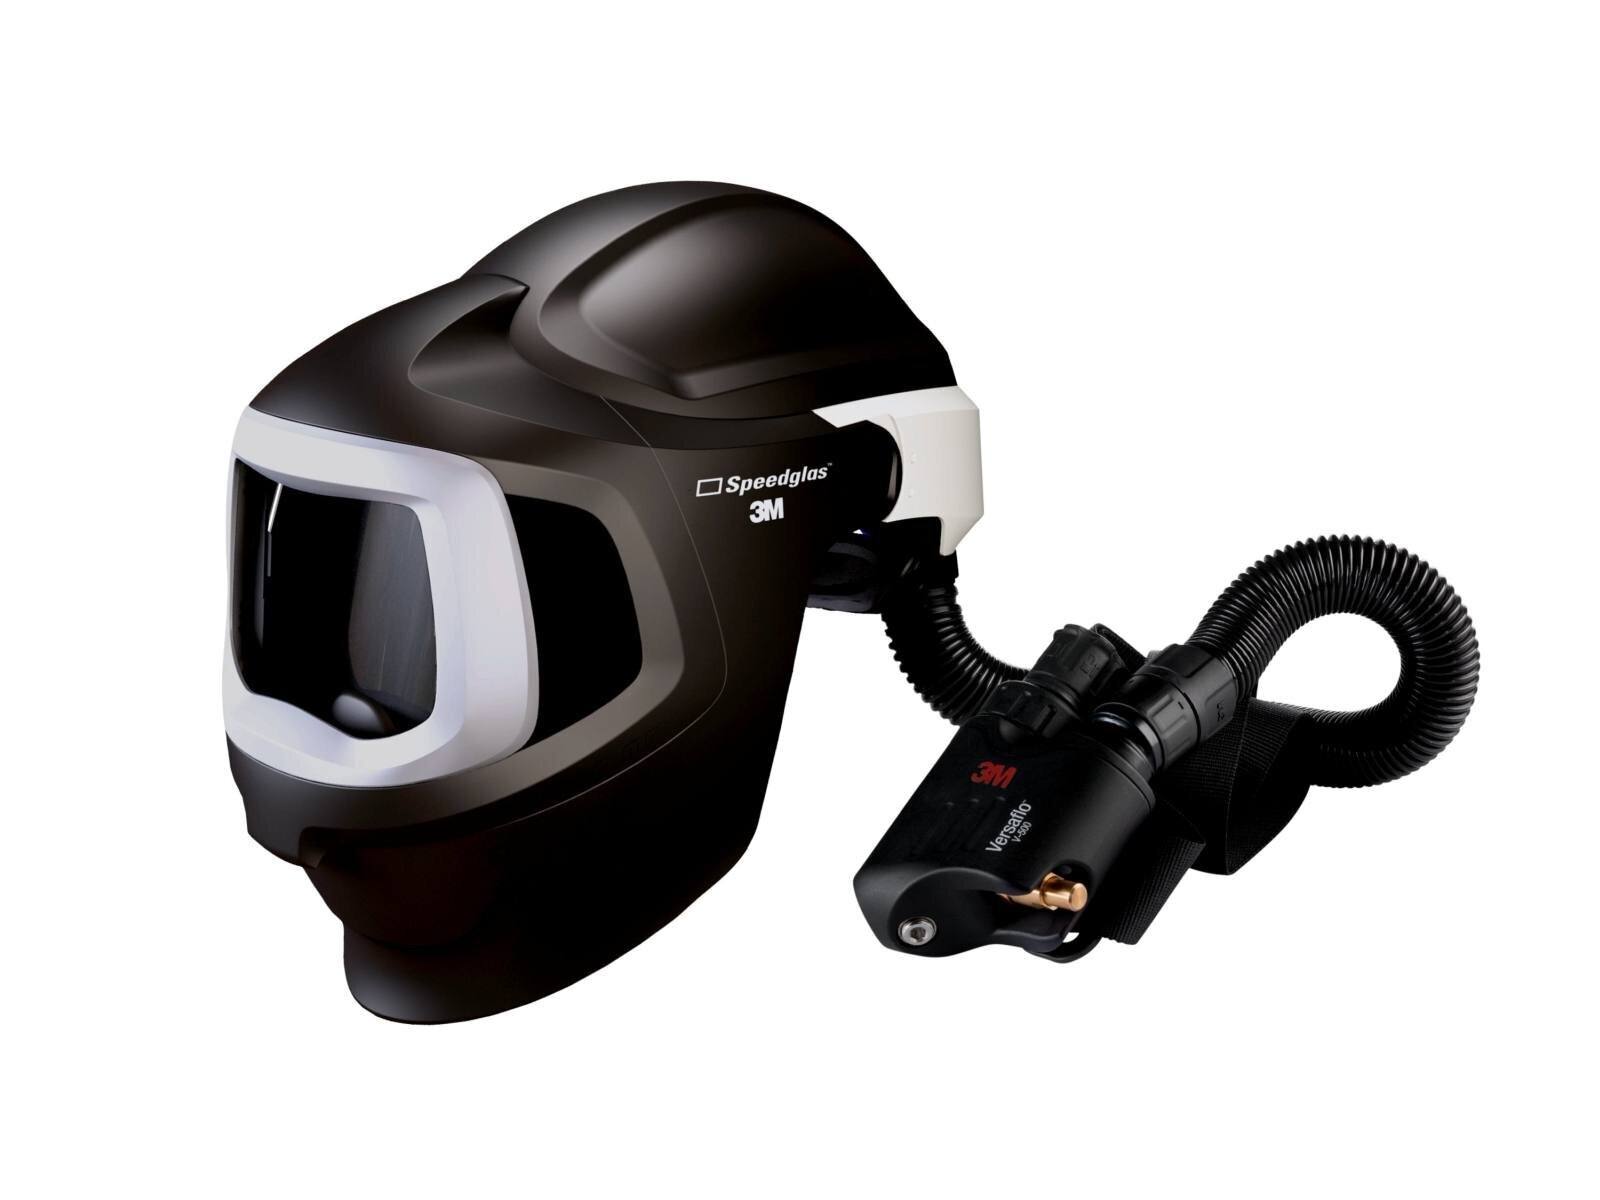 3M Speedglas lasmasker 9100 MP, zonder ADF, met Versaflo V-500E ademluchtbescherming, luchtslang QRS, adapter 5333506, luchtstroommeter incl. opbergtas #578800